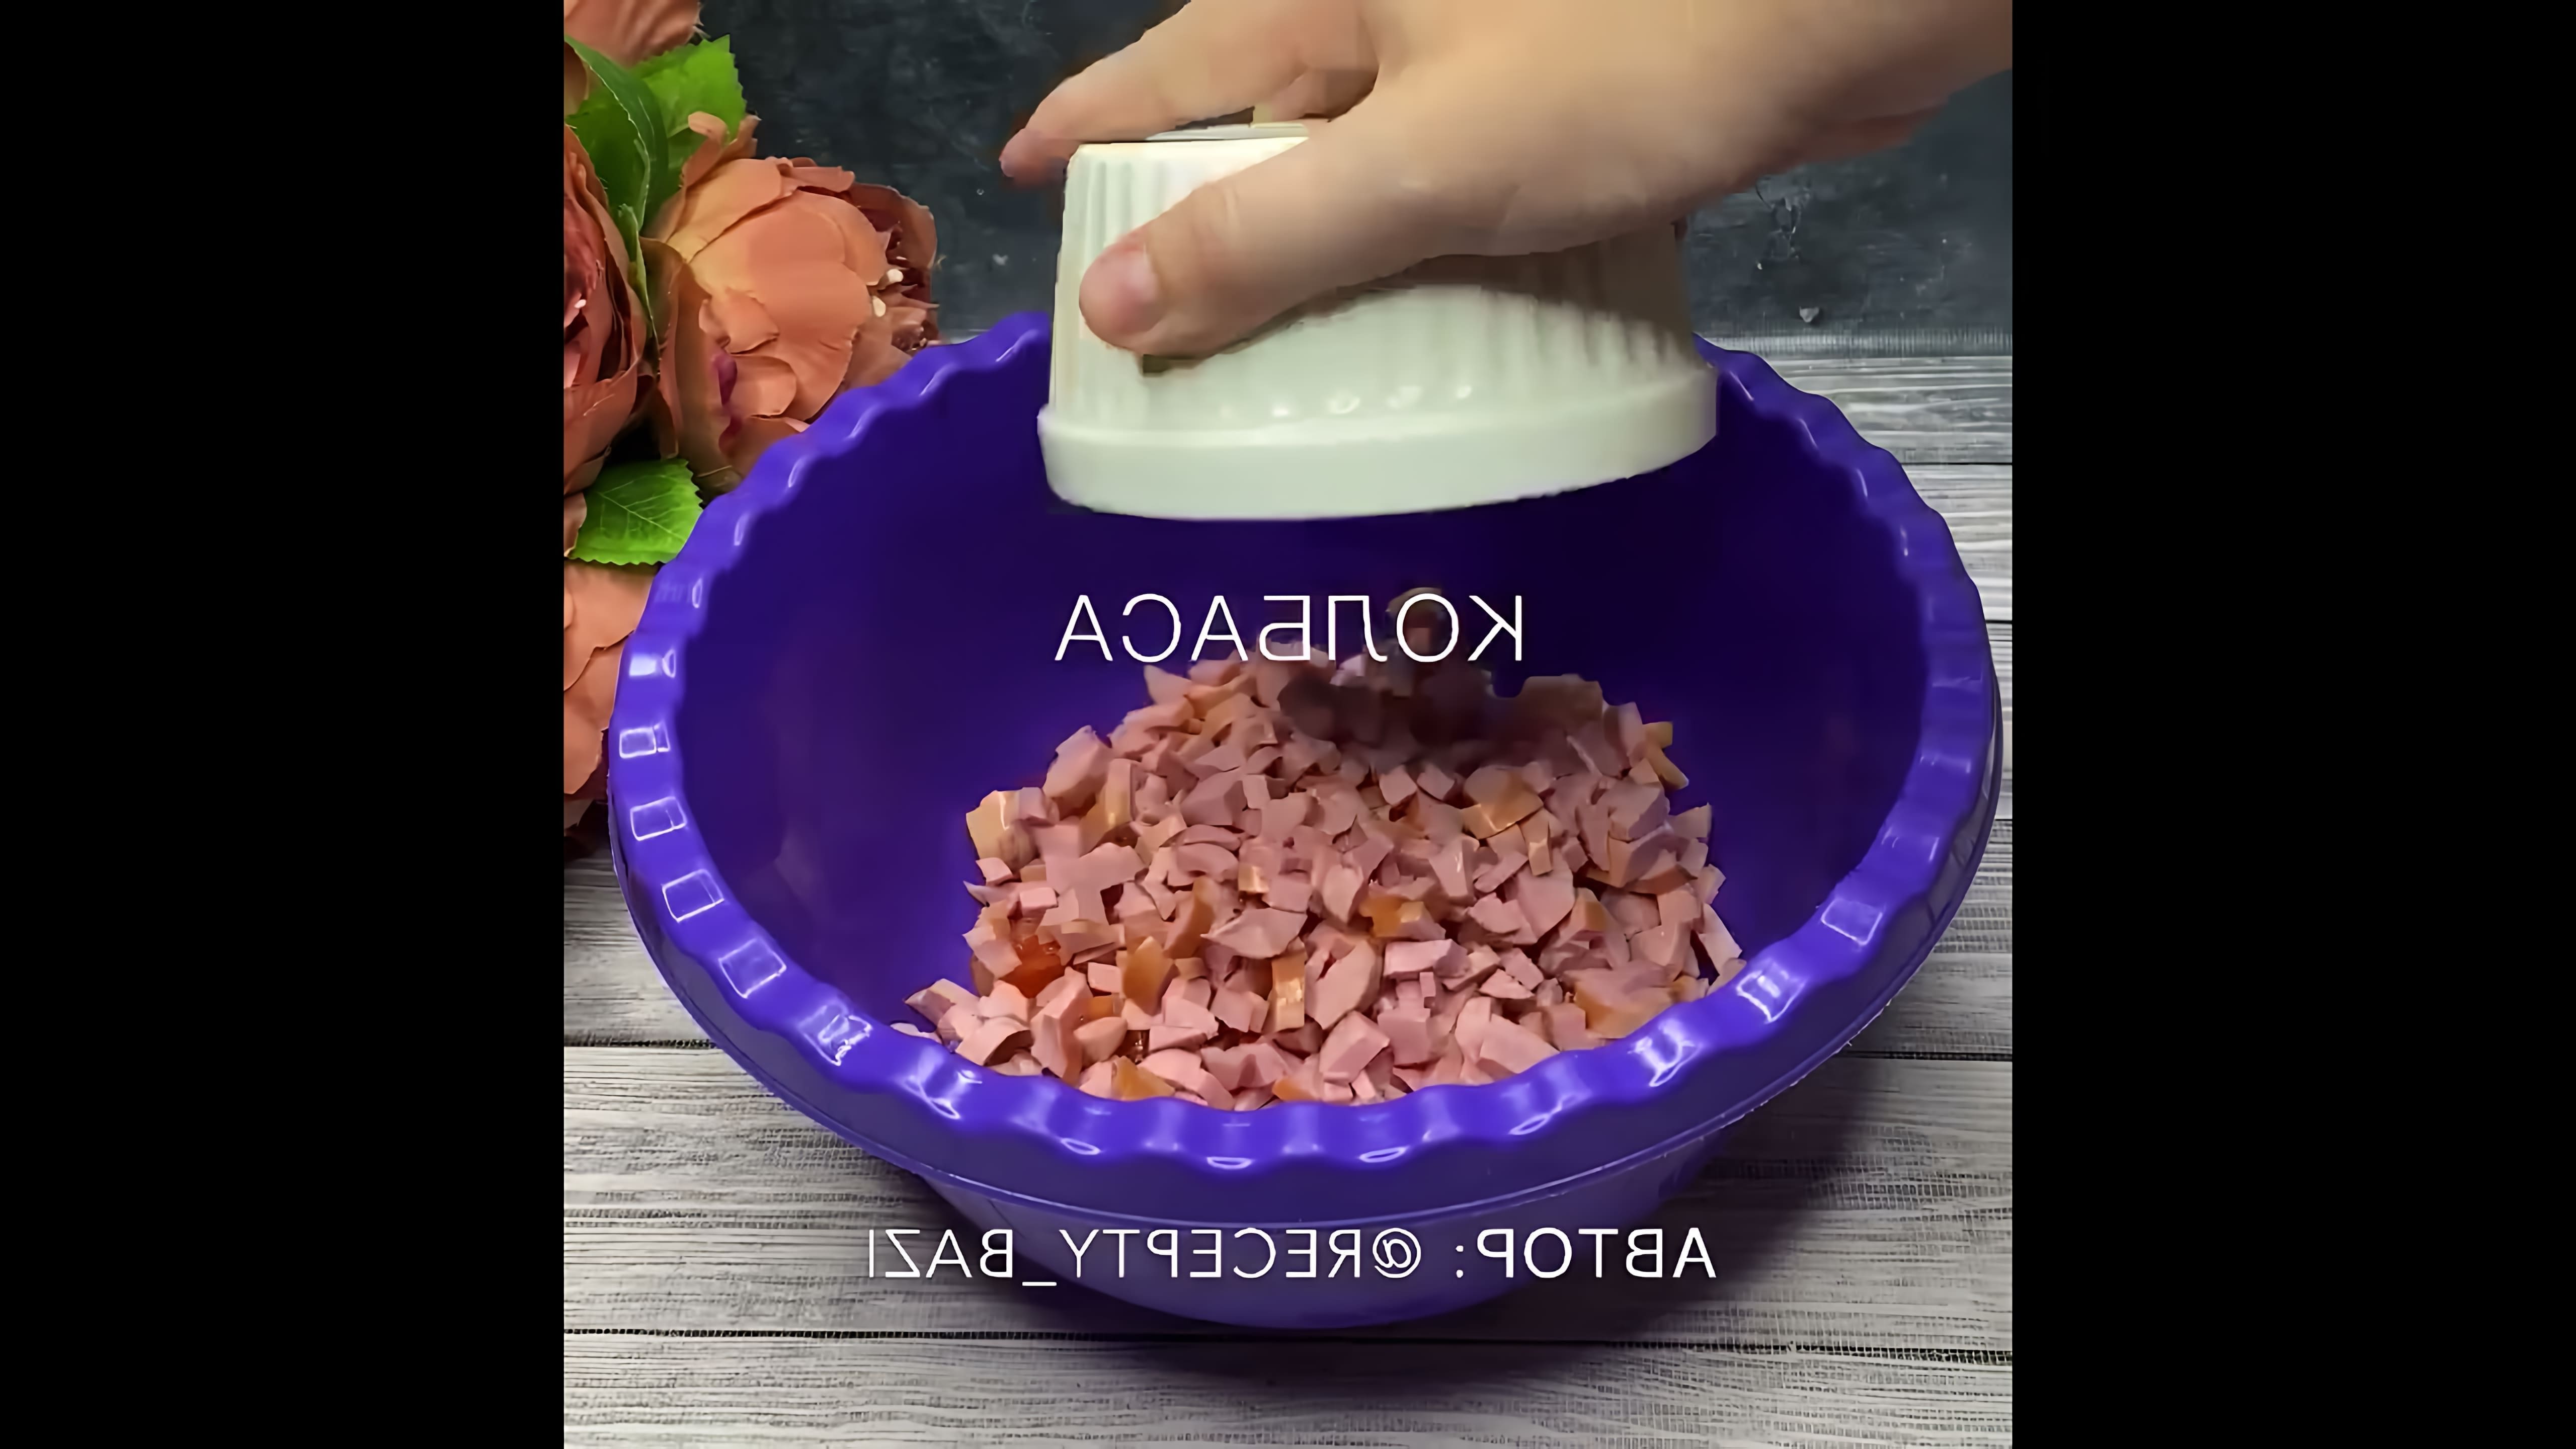 В этом видео демонстрируется рецепт приготовления оладий, которые выглядят как пицца